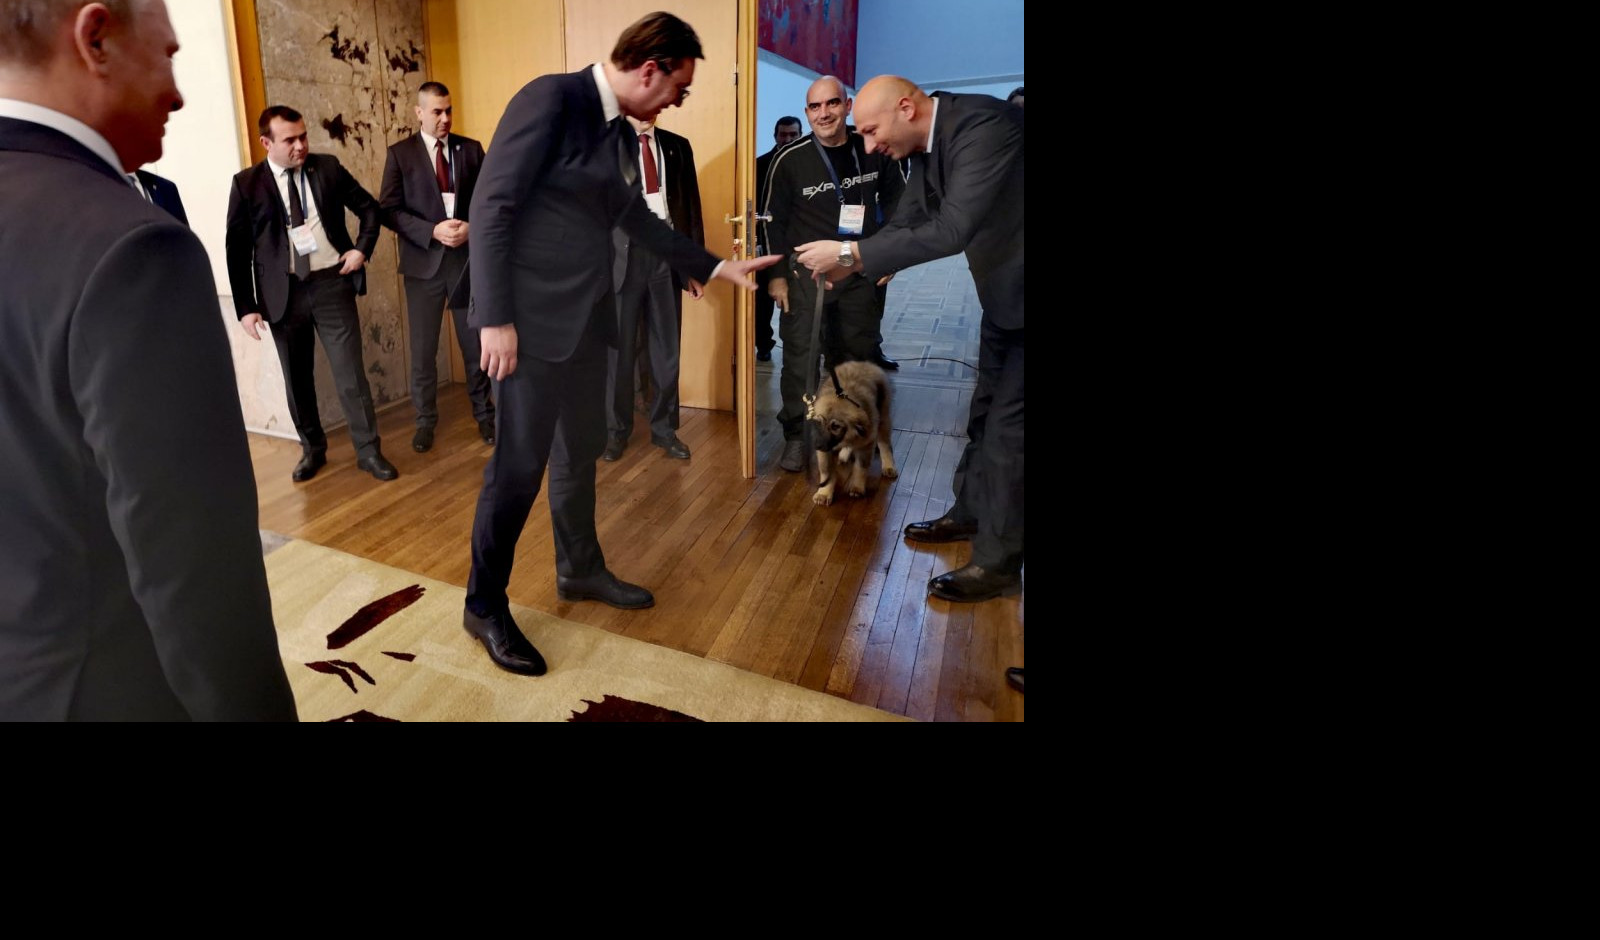 (FOTO) PRESLADAK SI, PAŠA! Putin upoznao svog novog ljubimca, šarplaninca kojeg mu je Vučić poklonio!